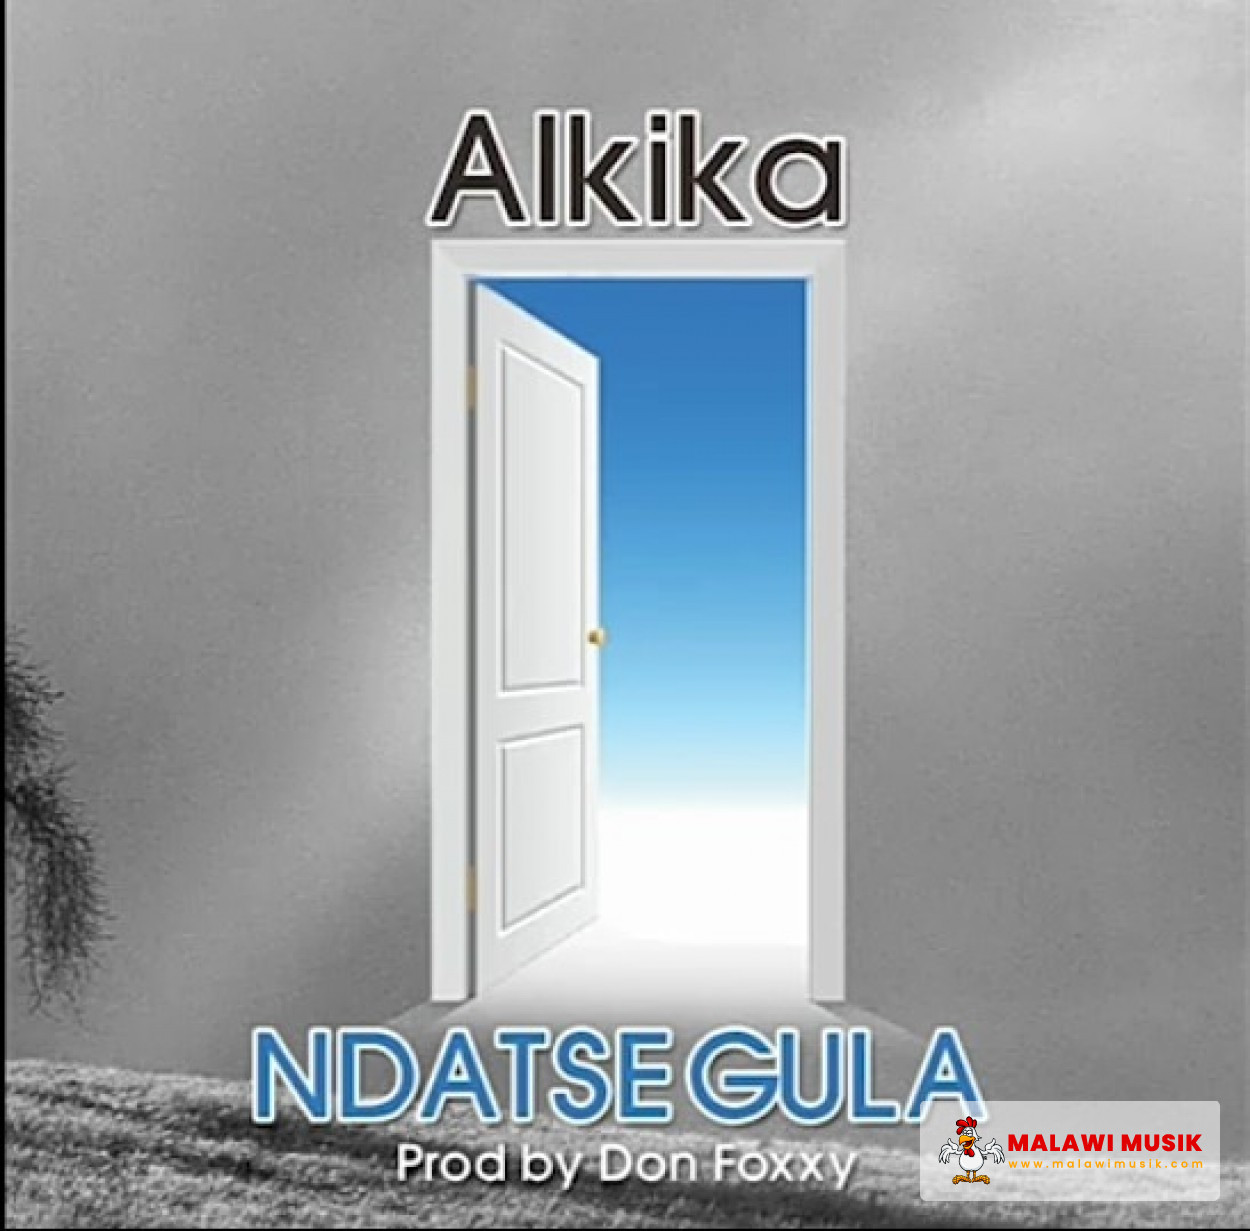 Alkika - Ndatsegula (Prod. Don Foxxy)